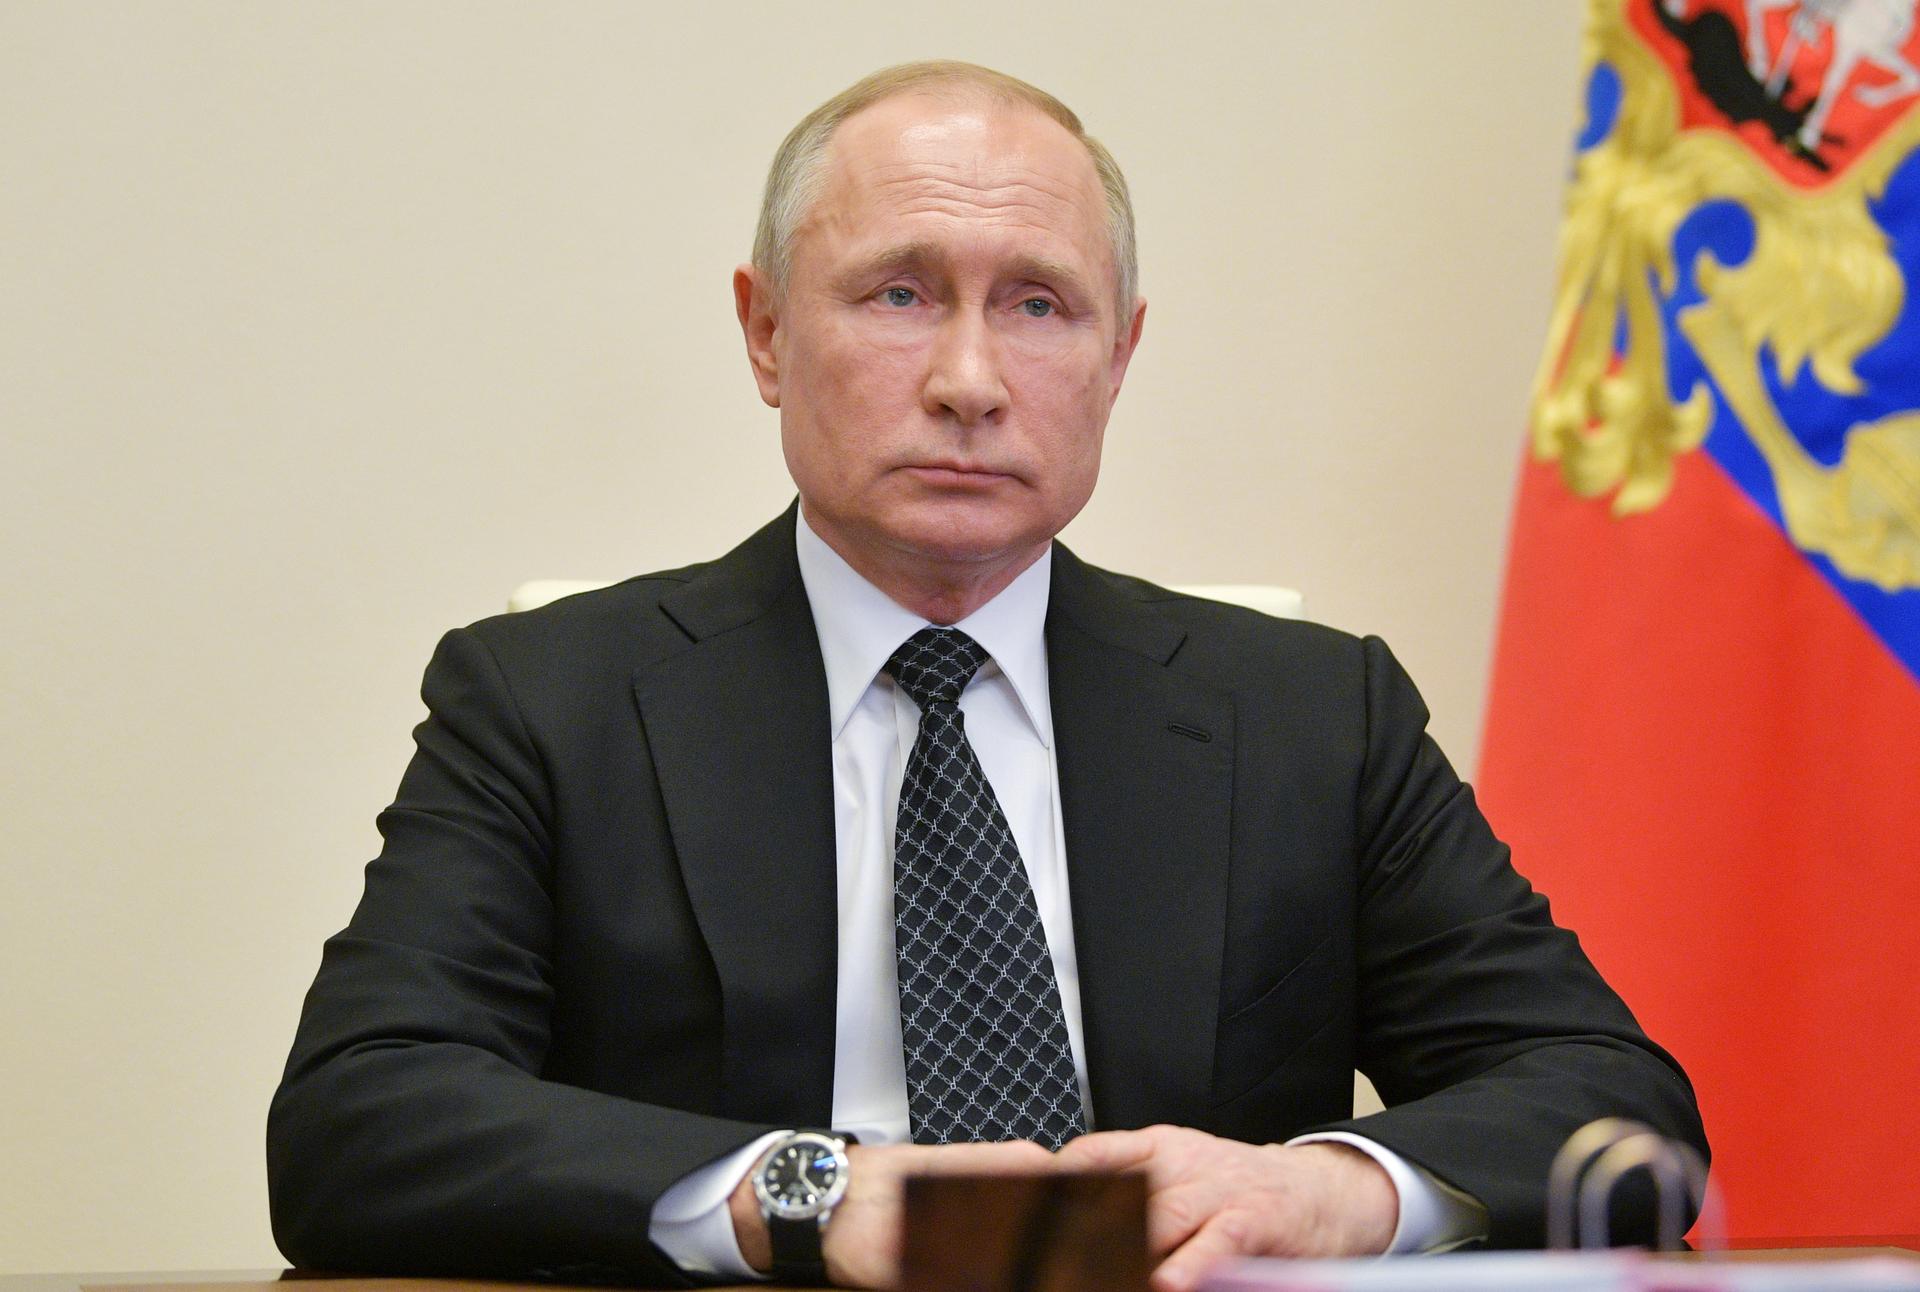 Putin says coronavirus crisis under full control despite record rise in cases